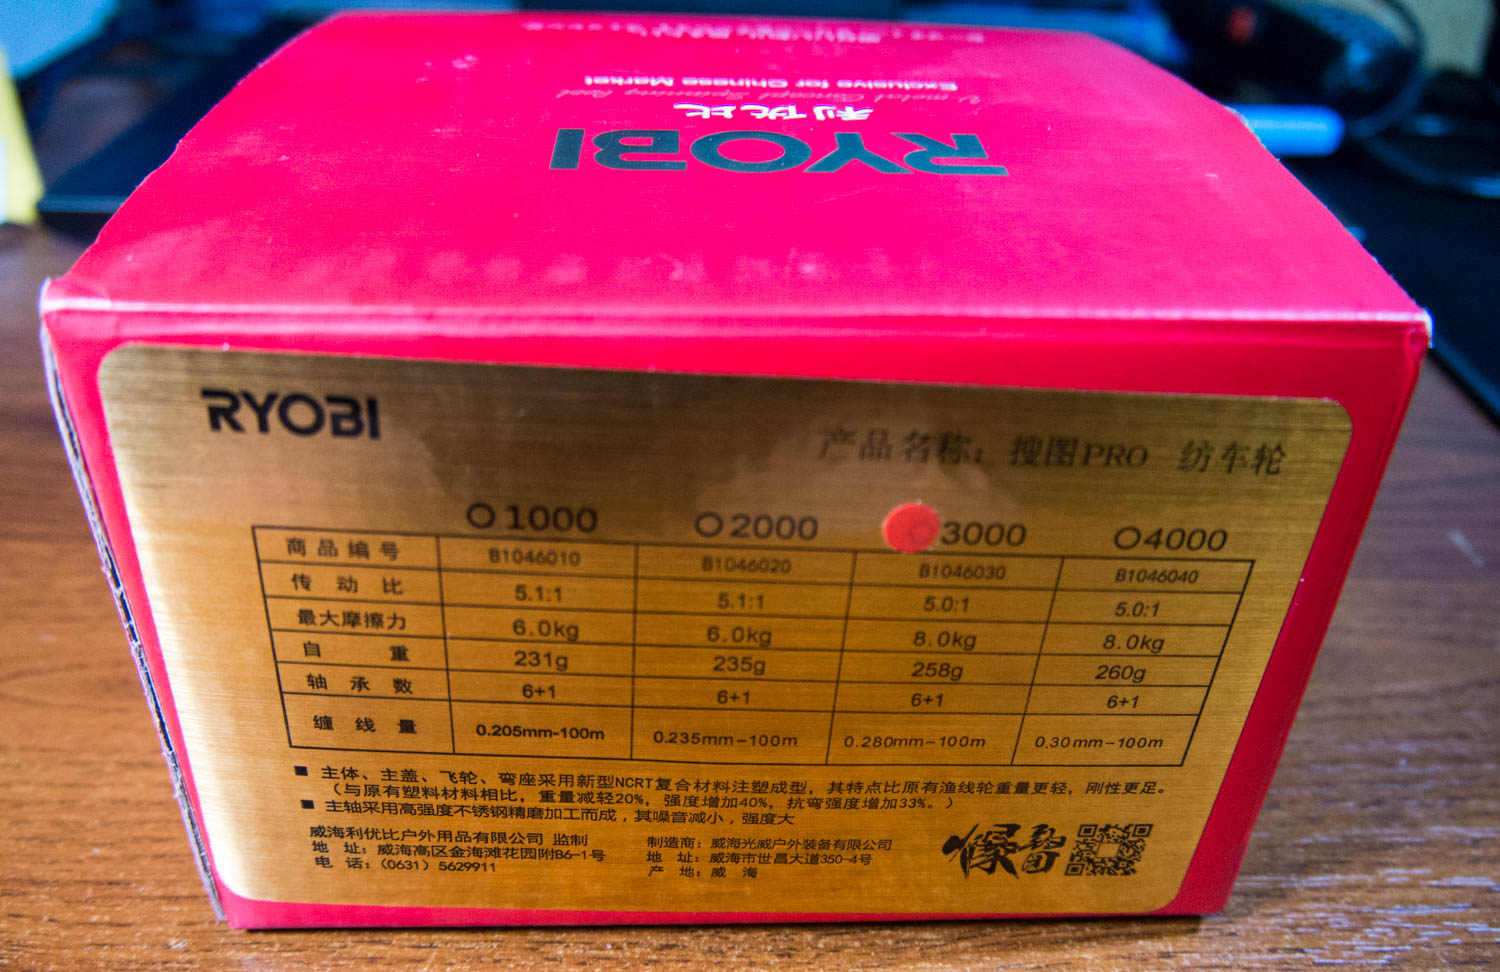 RYOBI SMAP PRO box side view